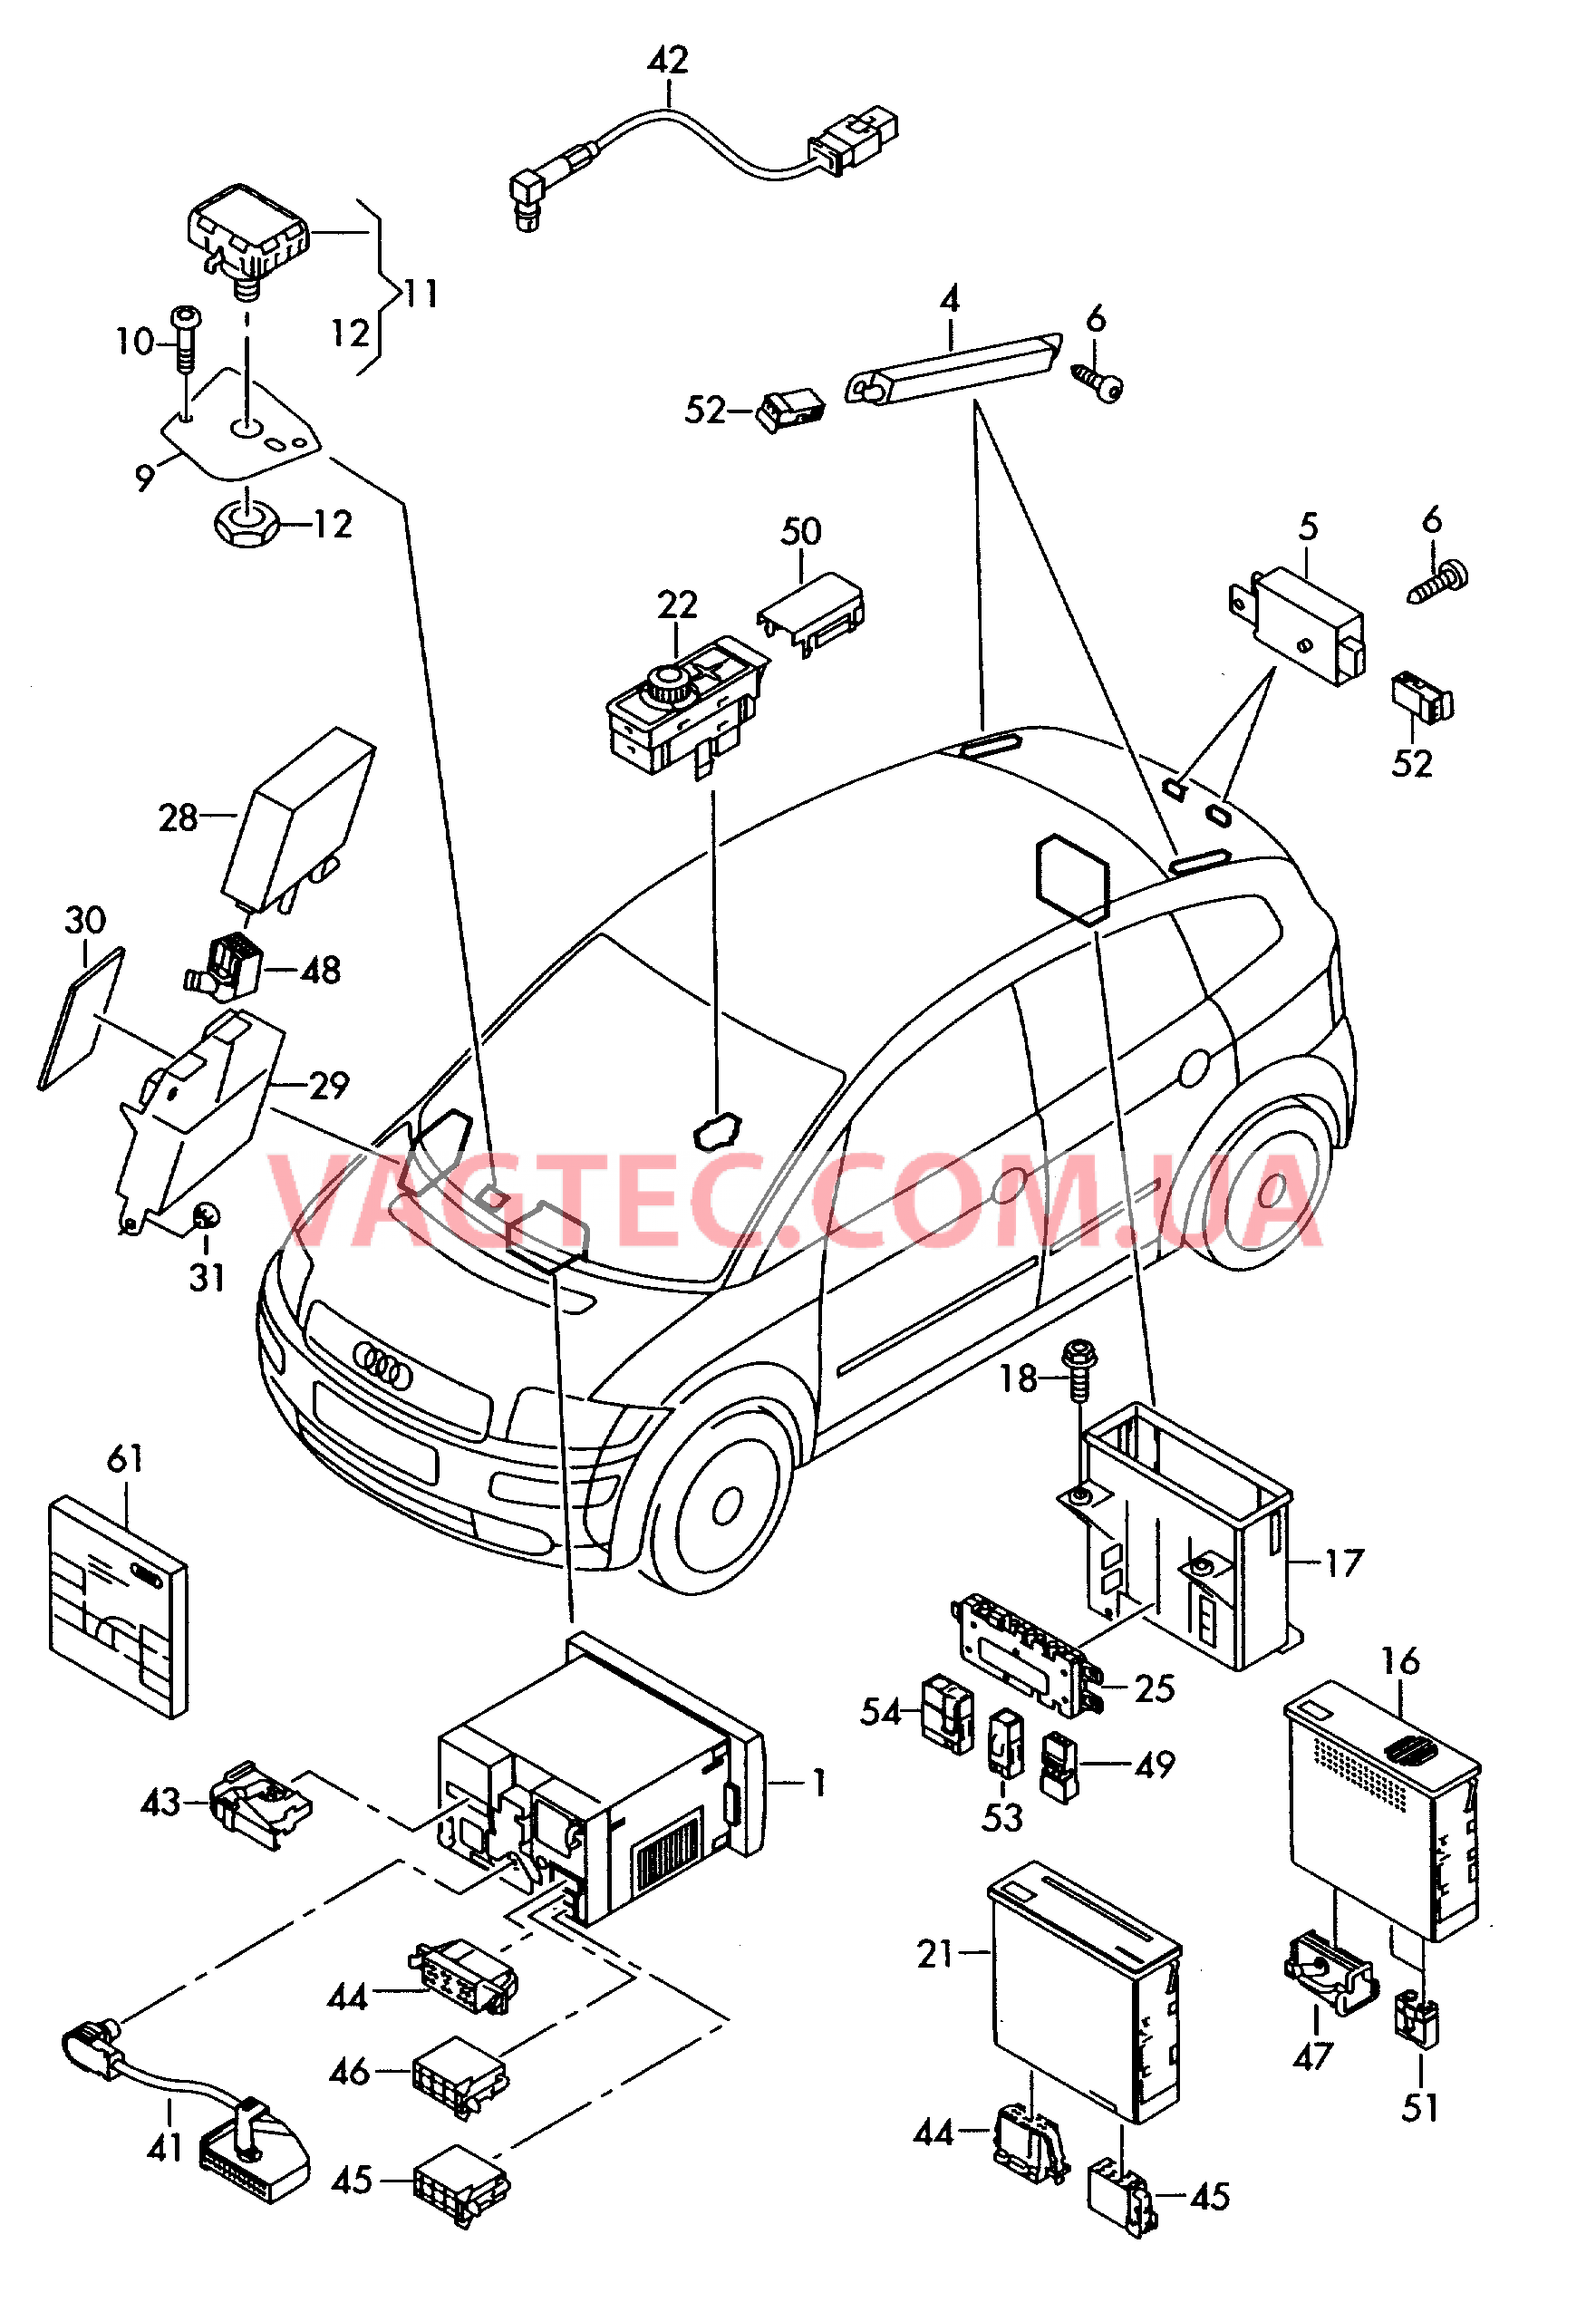 Электродетали для системы навигации с дисплеем в комбинации приборов  для AUDI A2 2003